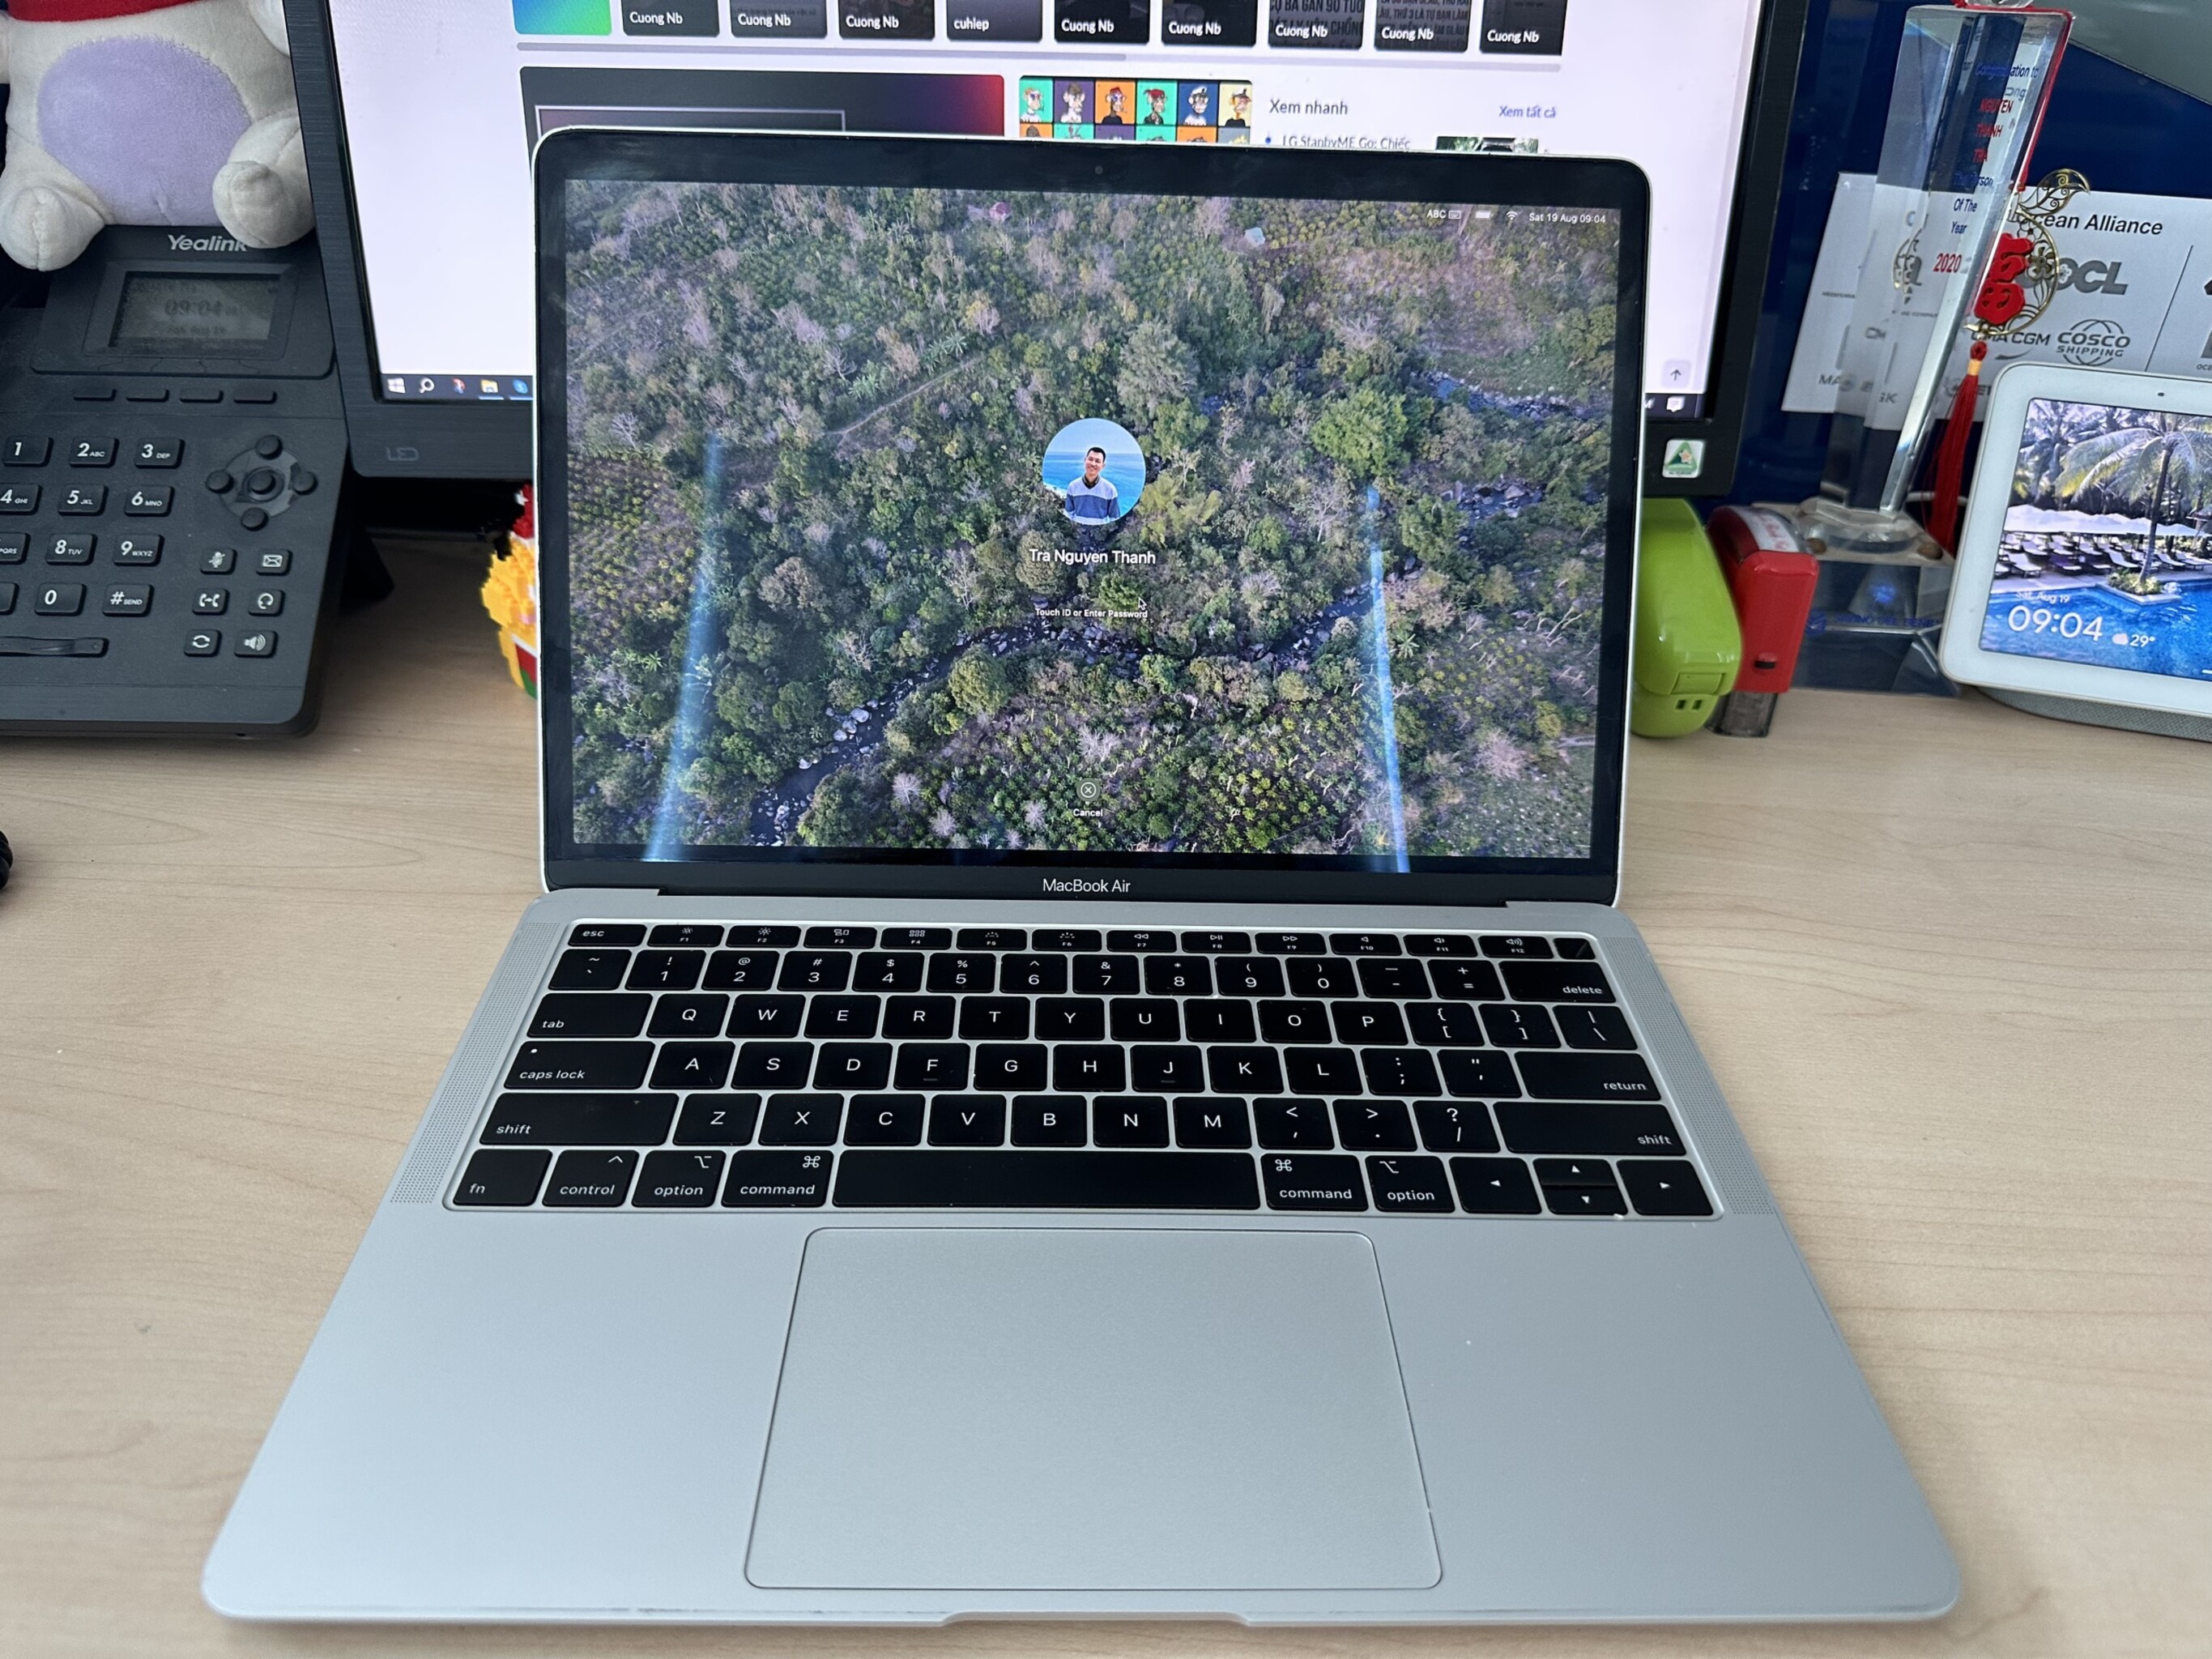 Lý do mua Macbook Air 2018: Phục vụ cho công việc di chuyển nhiều, pin lâu, máy đẹp, MacOS hay